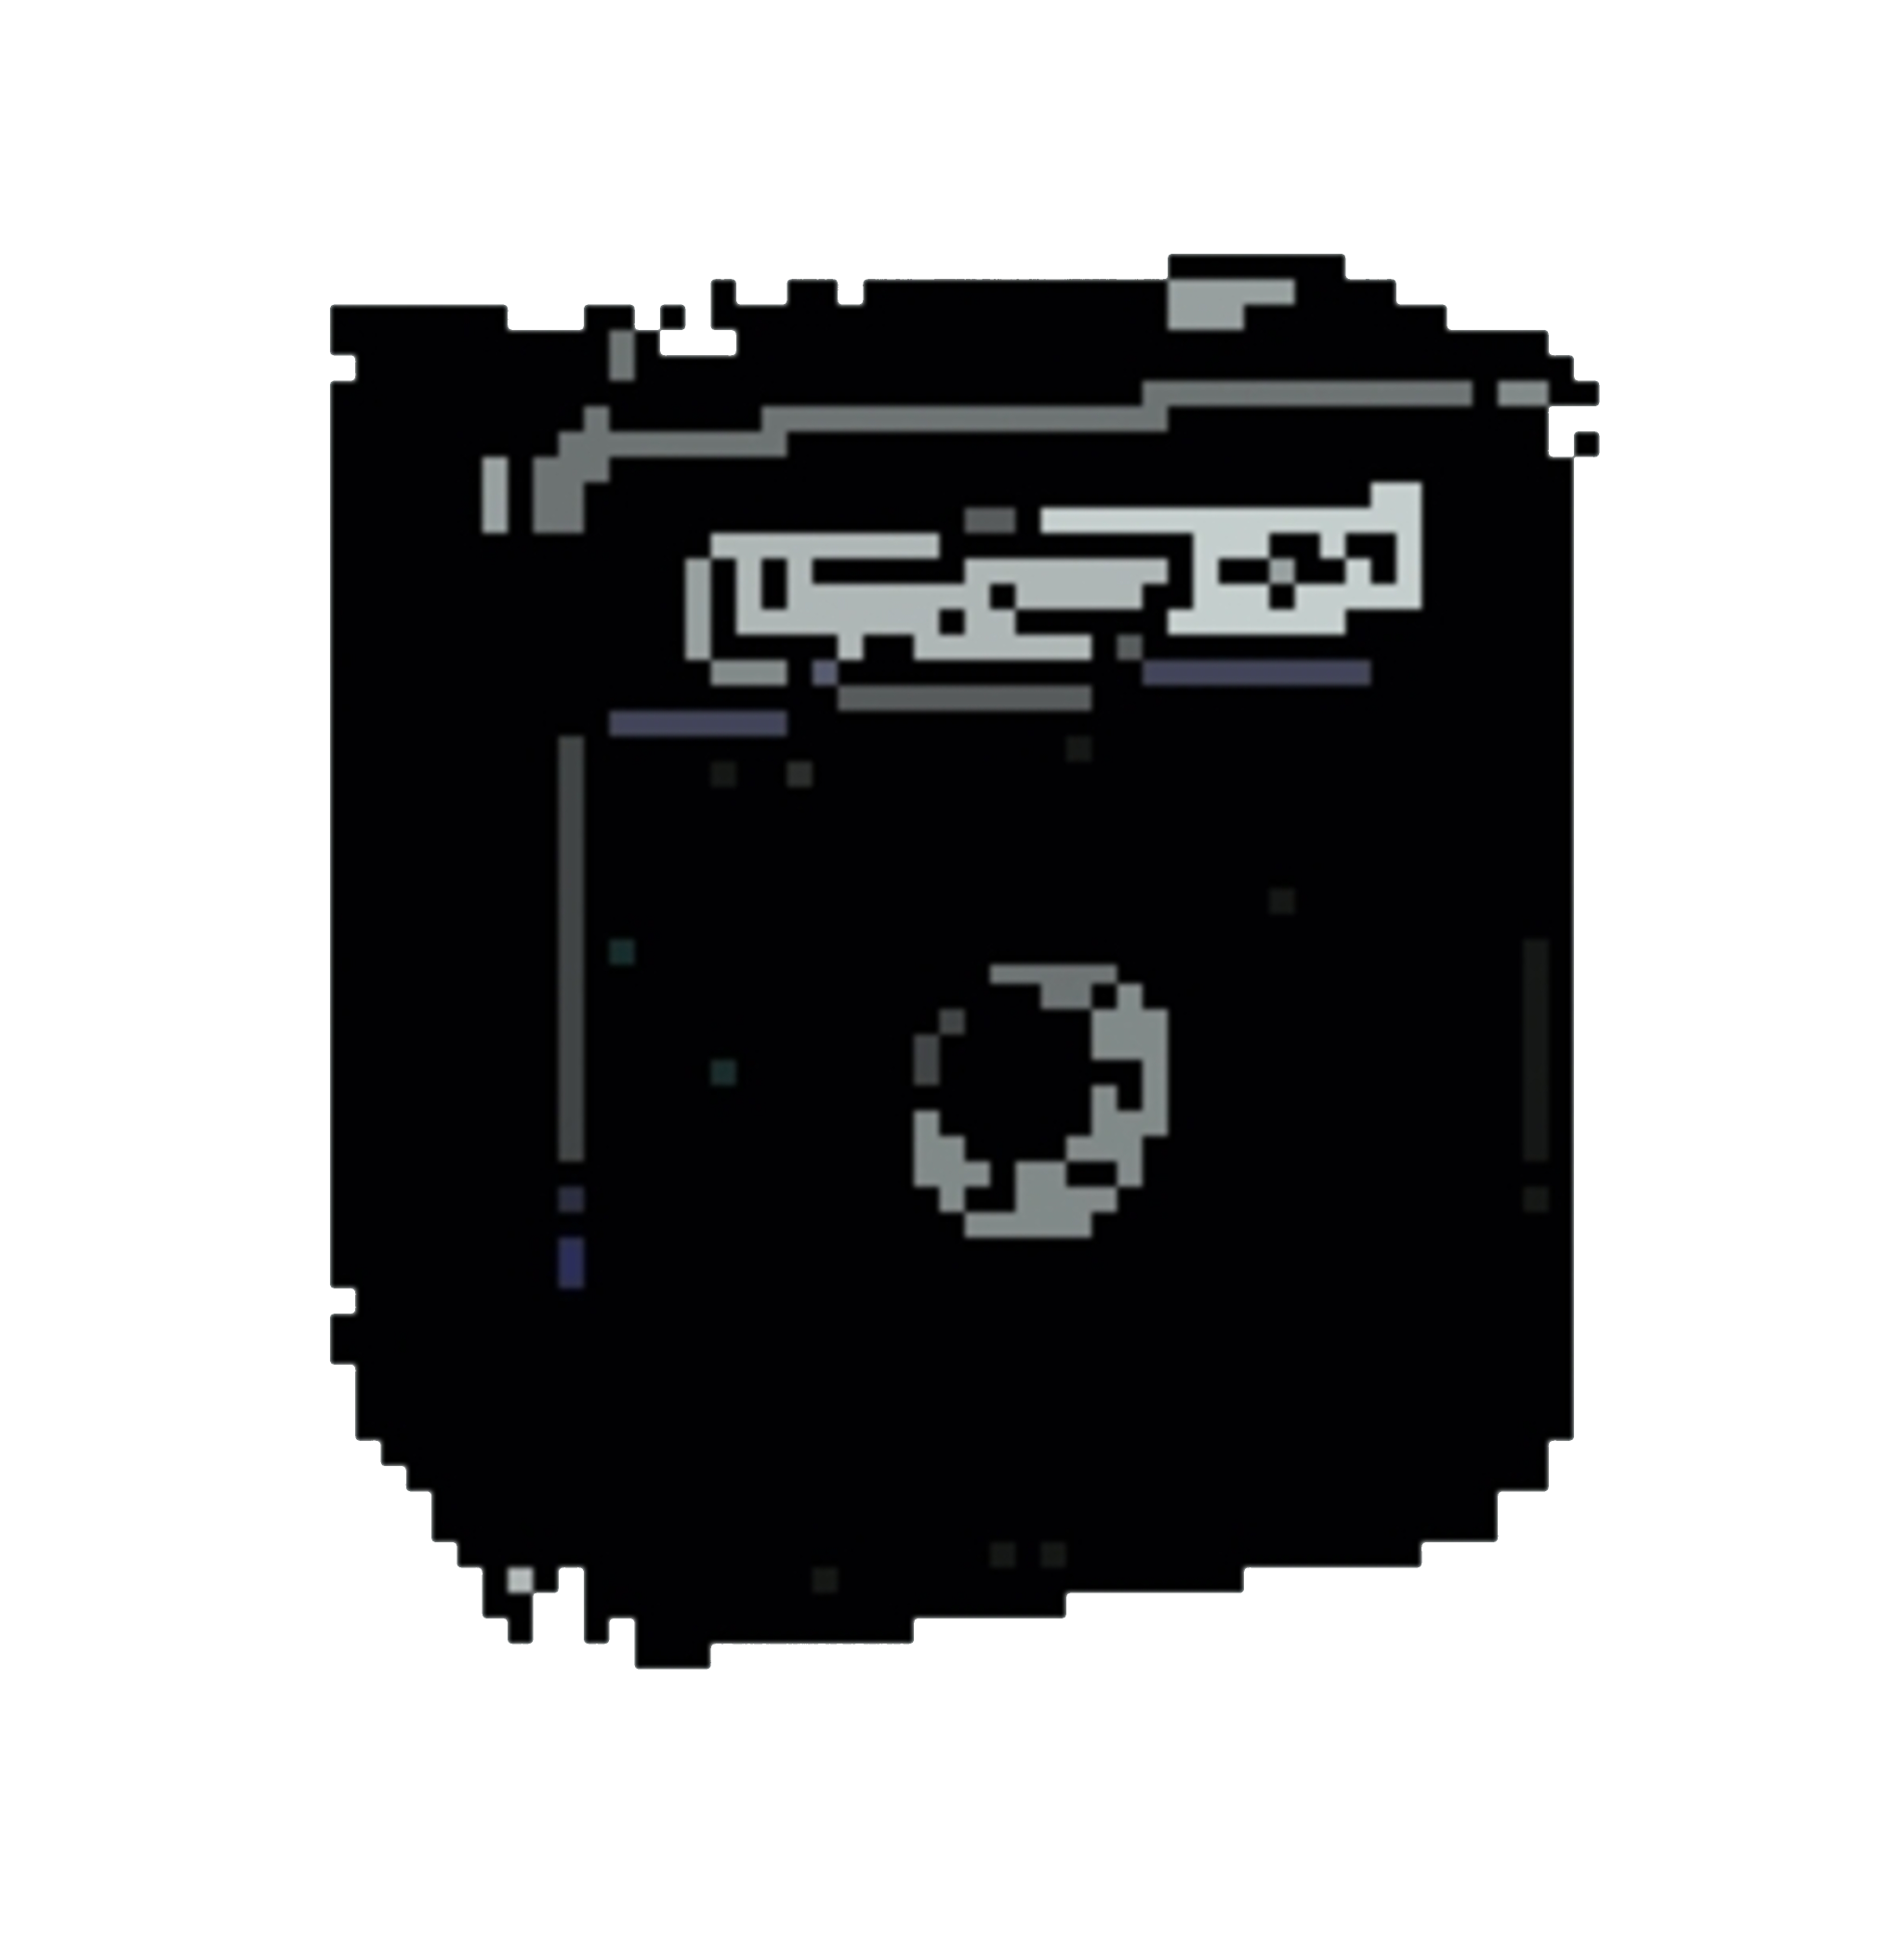 Pixel art of a Hartke 25 watt amplifier.